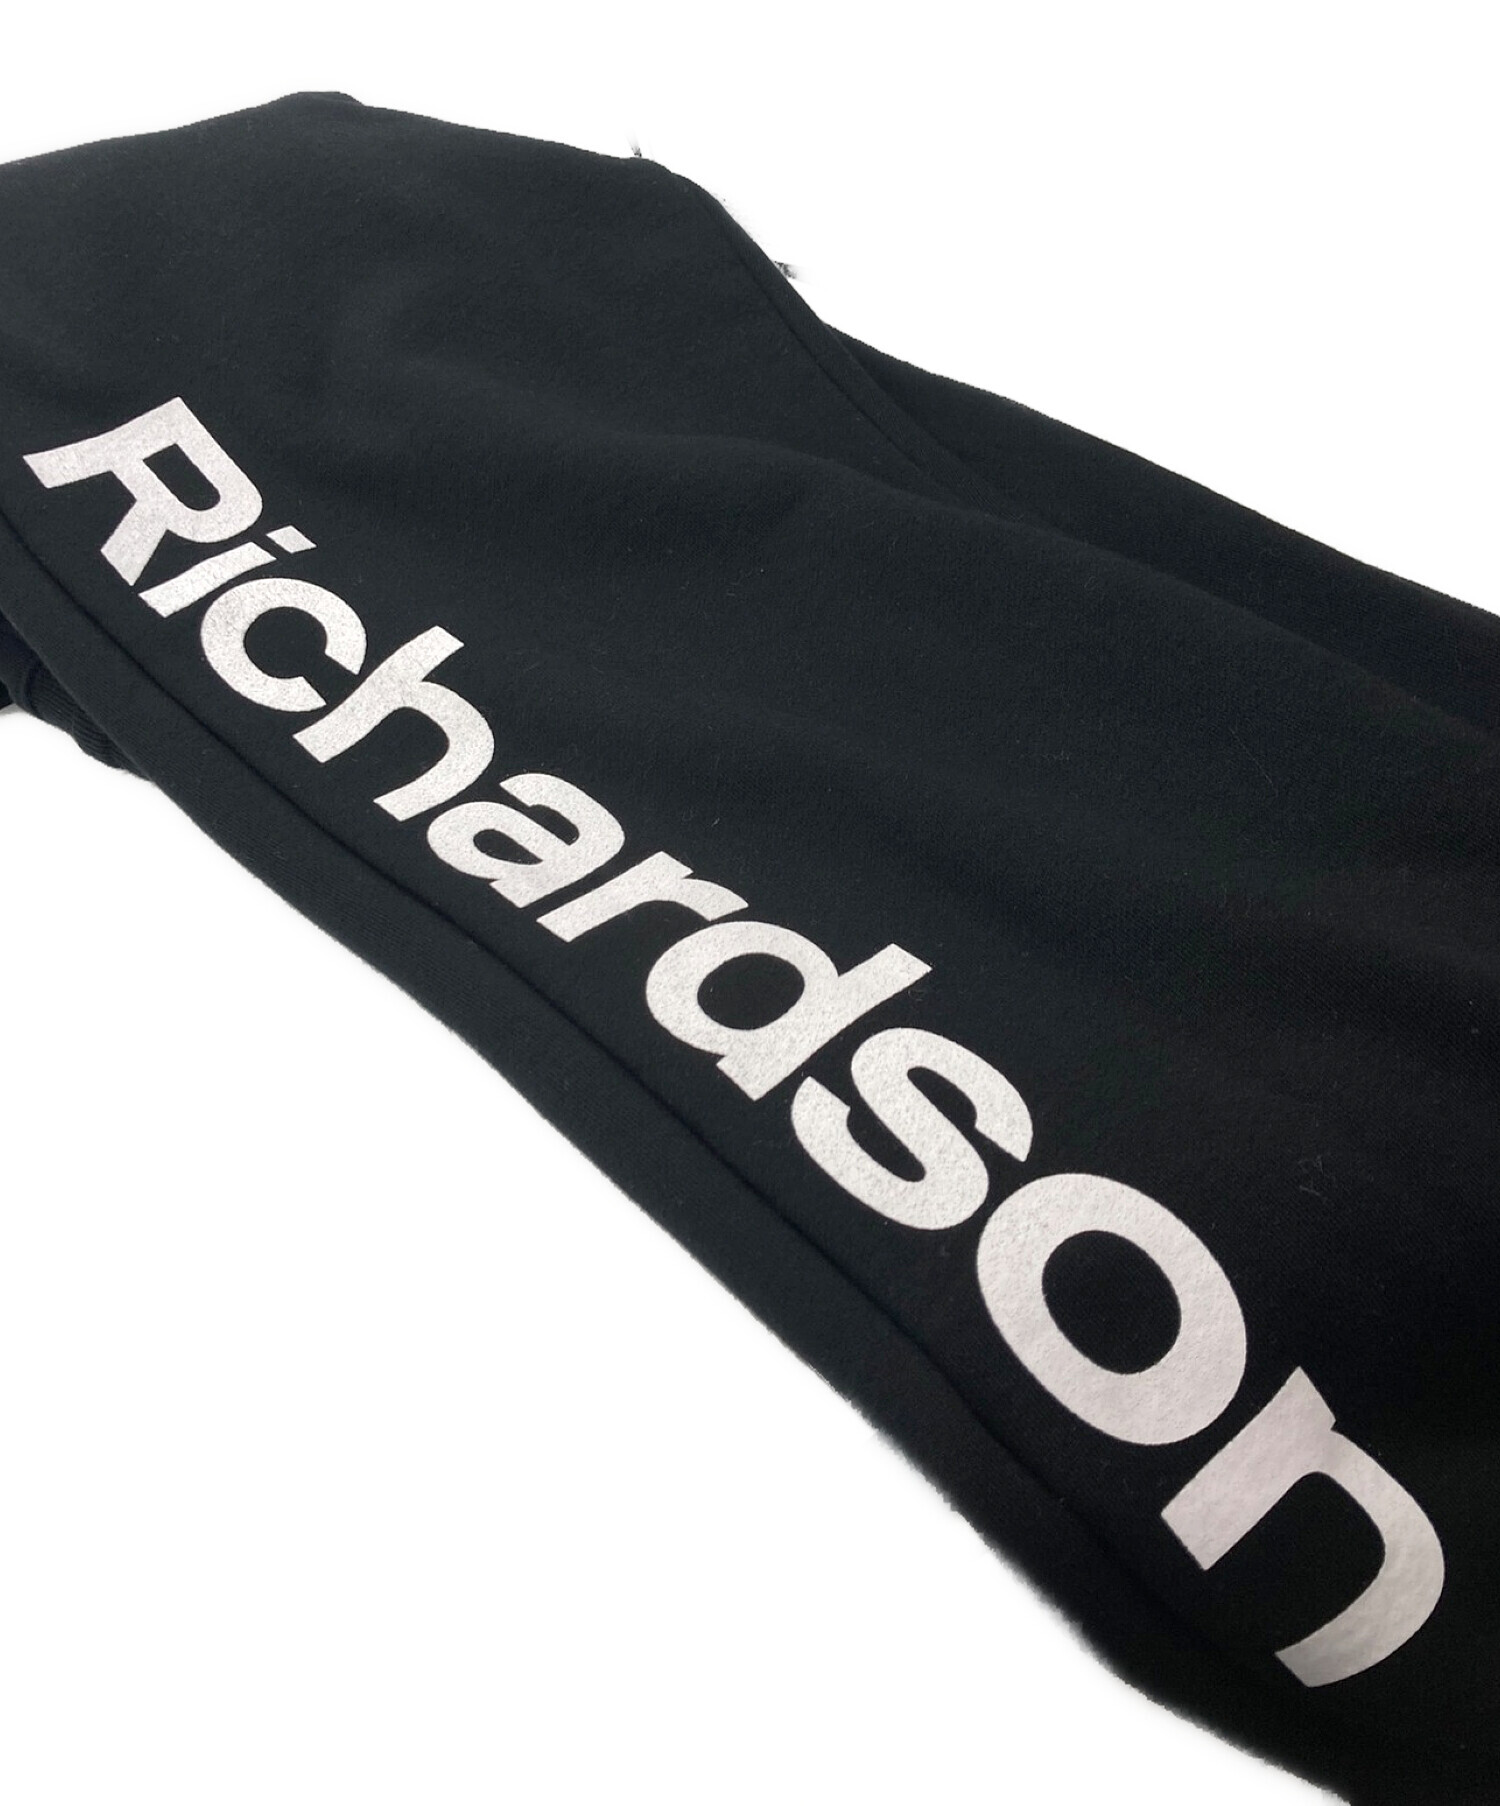 Richardson (リチャードソン) CHERRY BLスウェットパンツ ブラック サイズ:XL